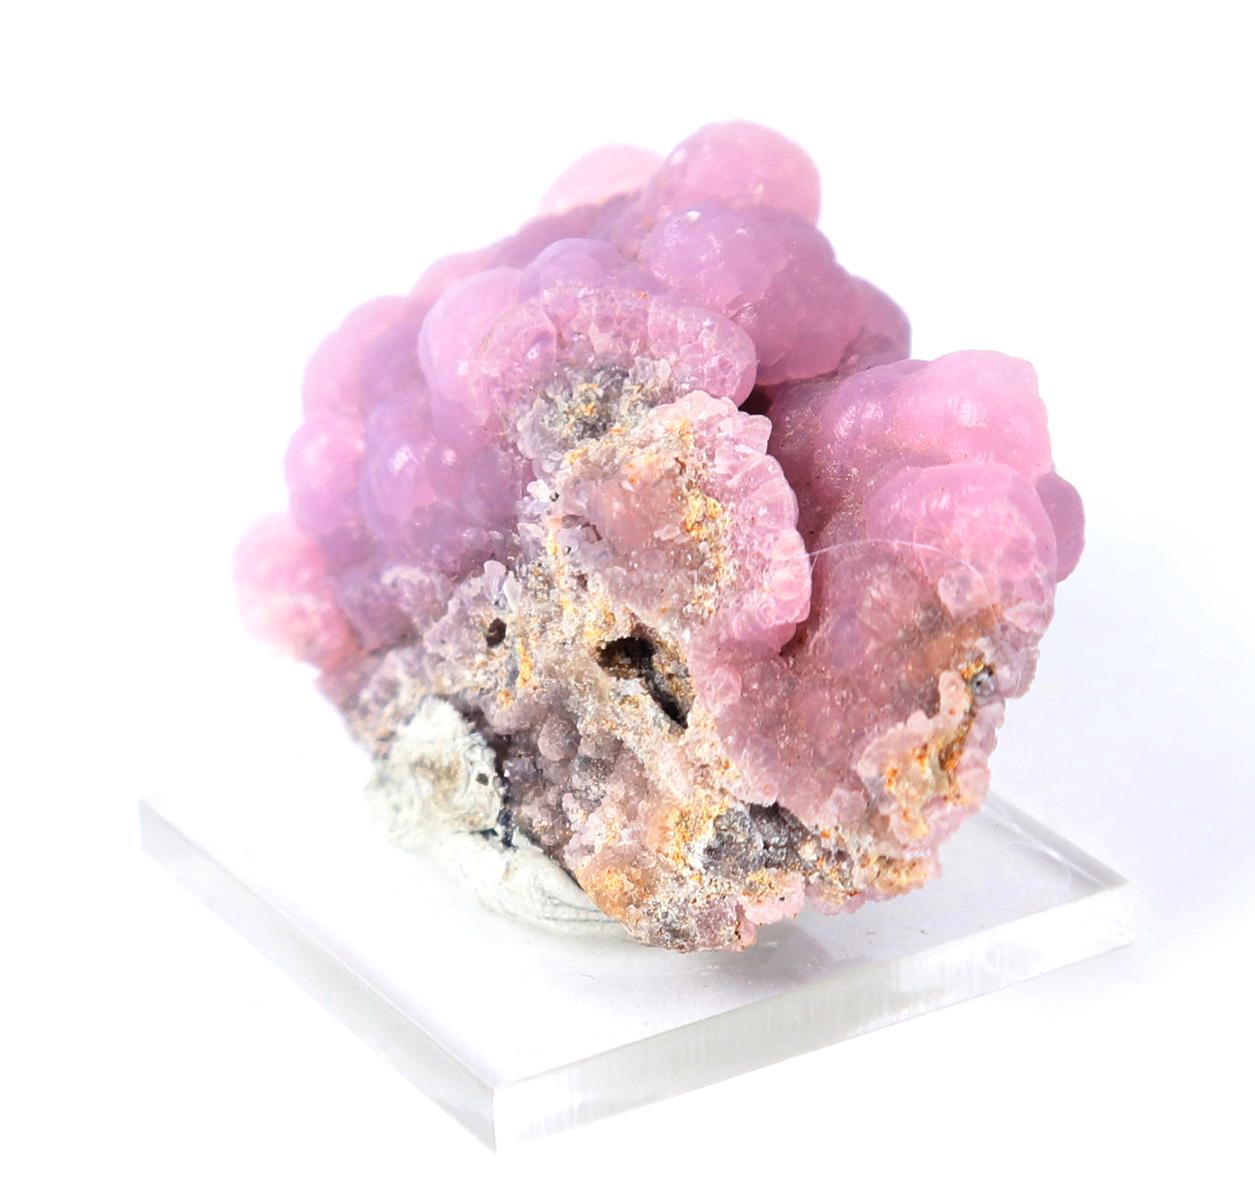 Lovely Lavendar Smithsonite Mineral Specimen